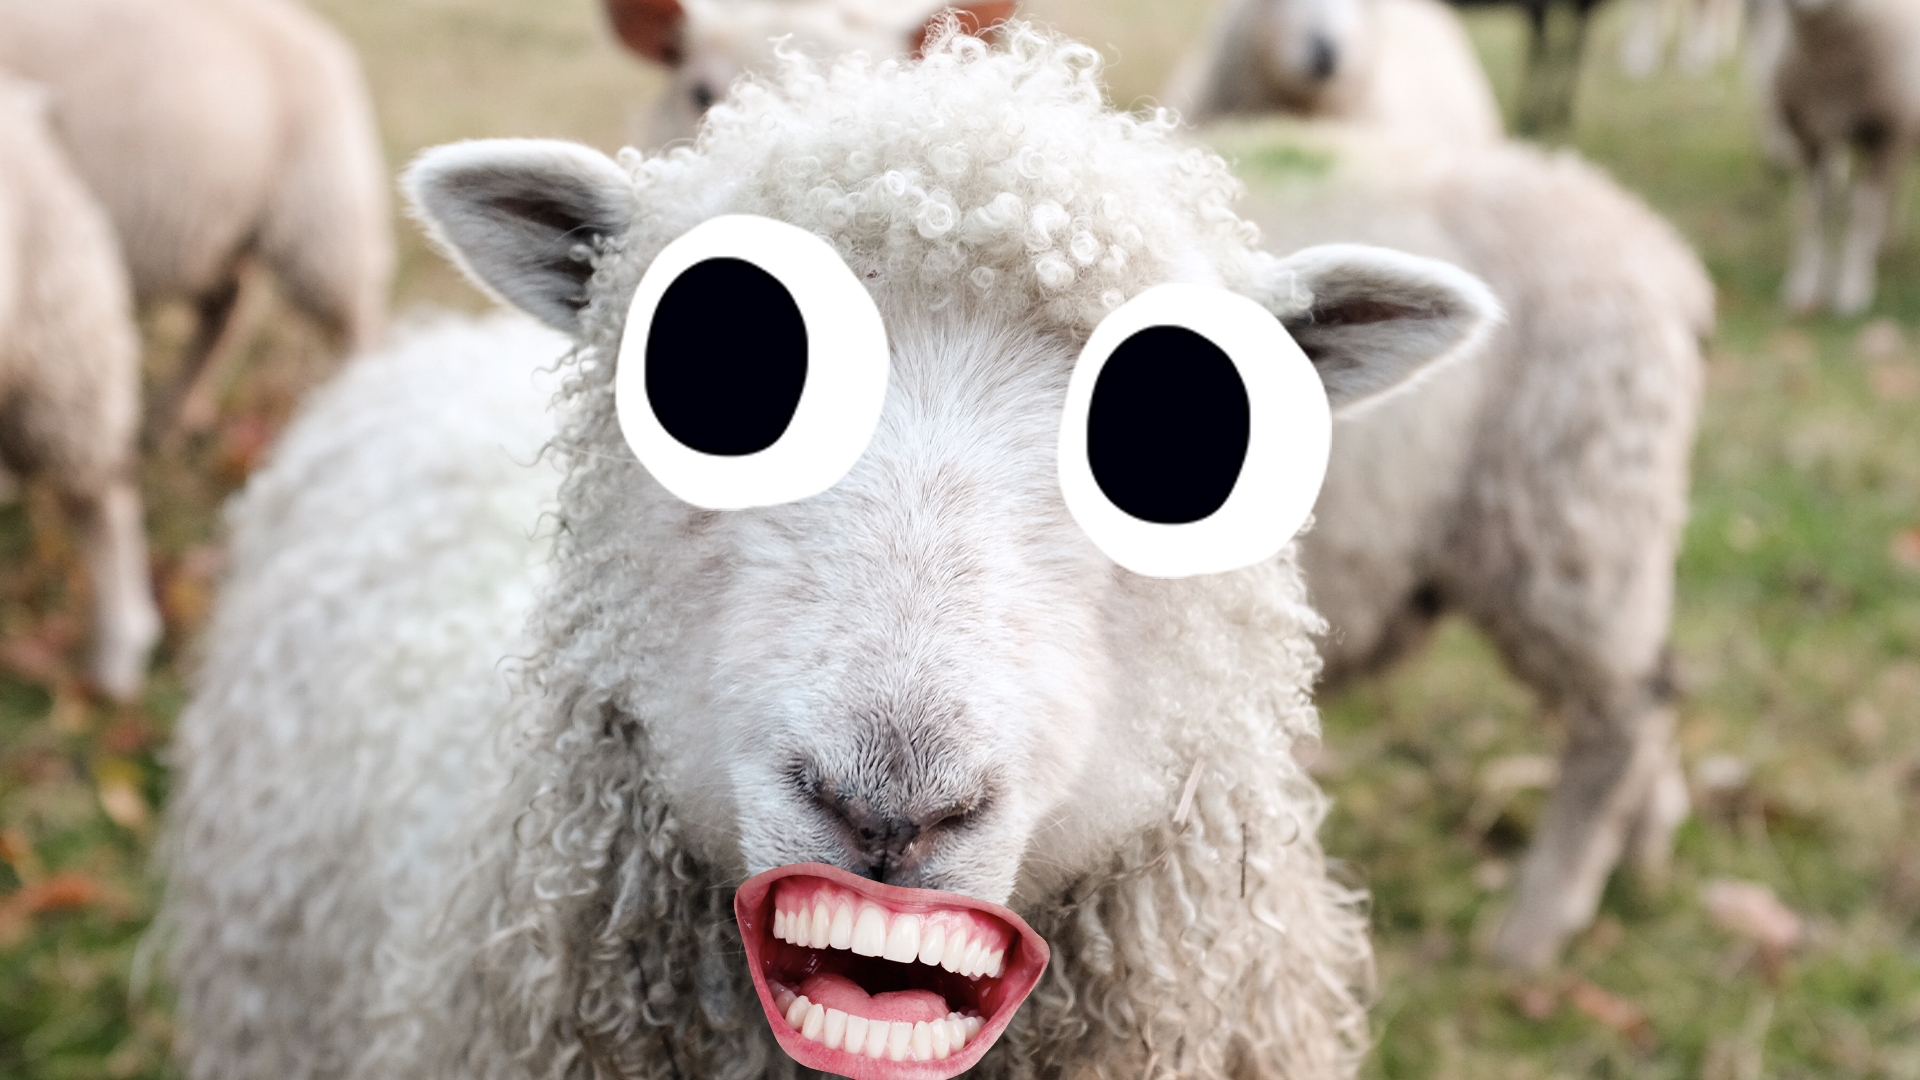 Derpy sheep